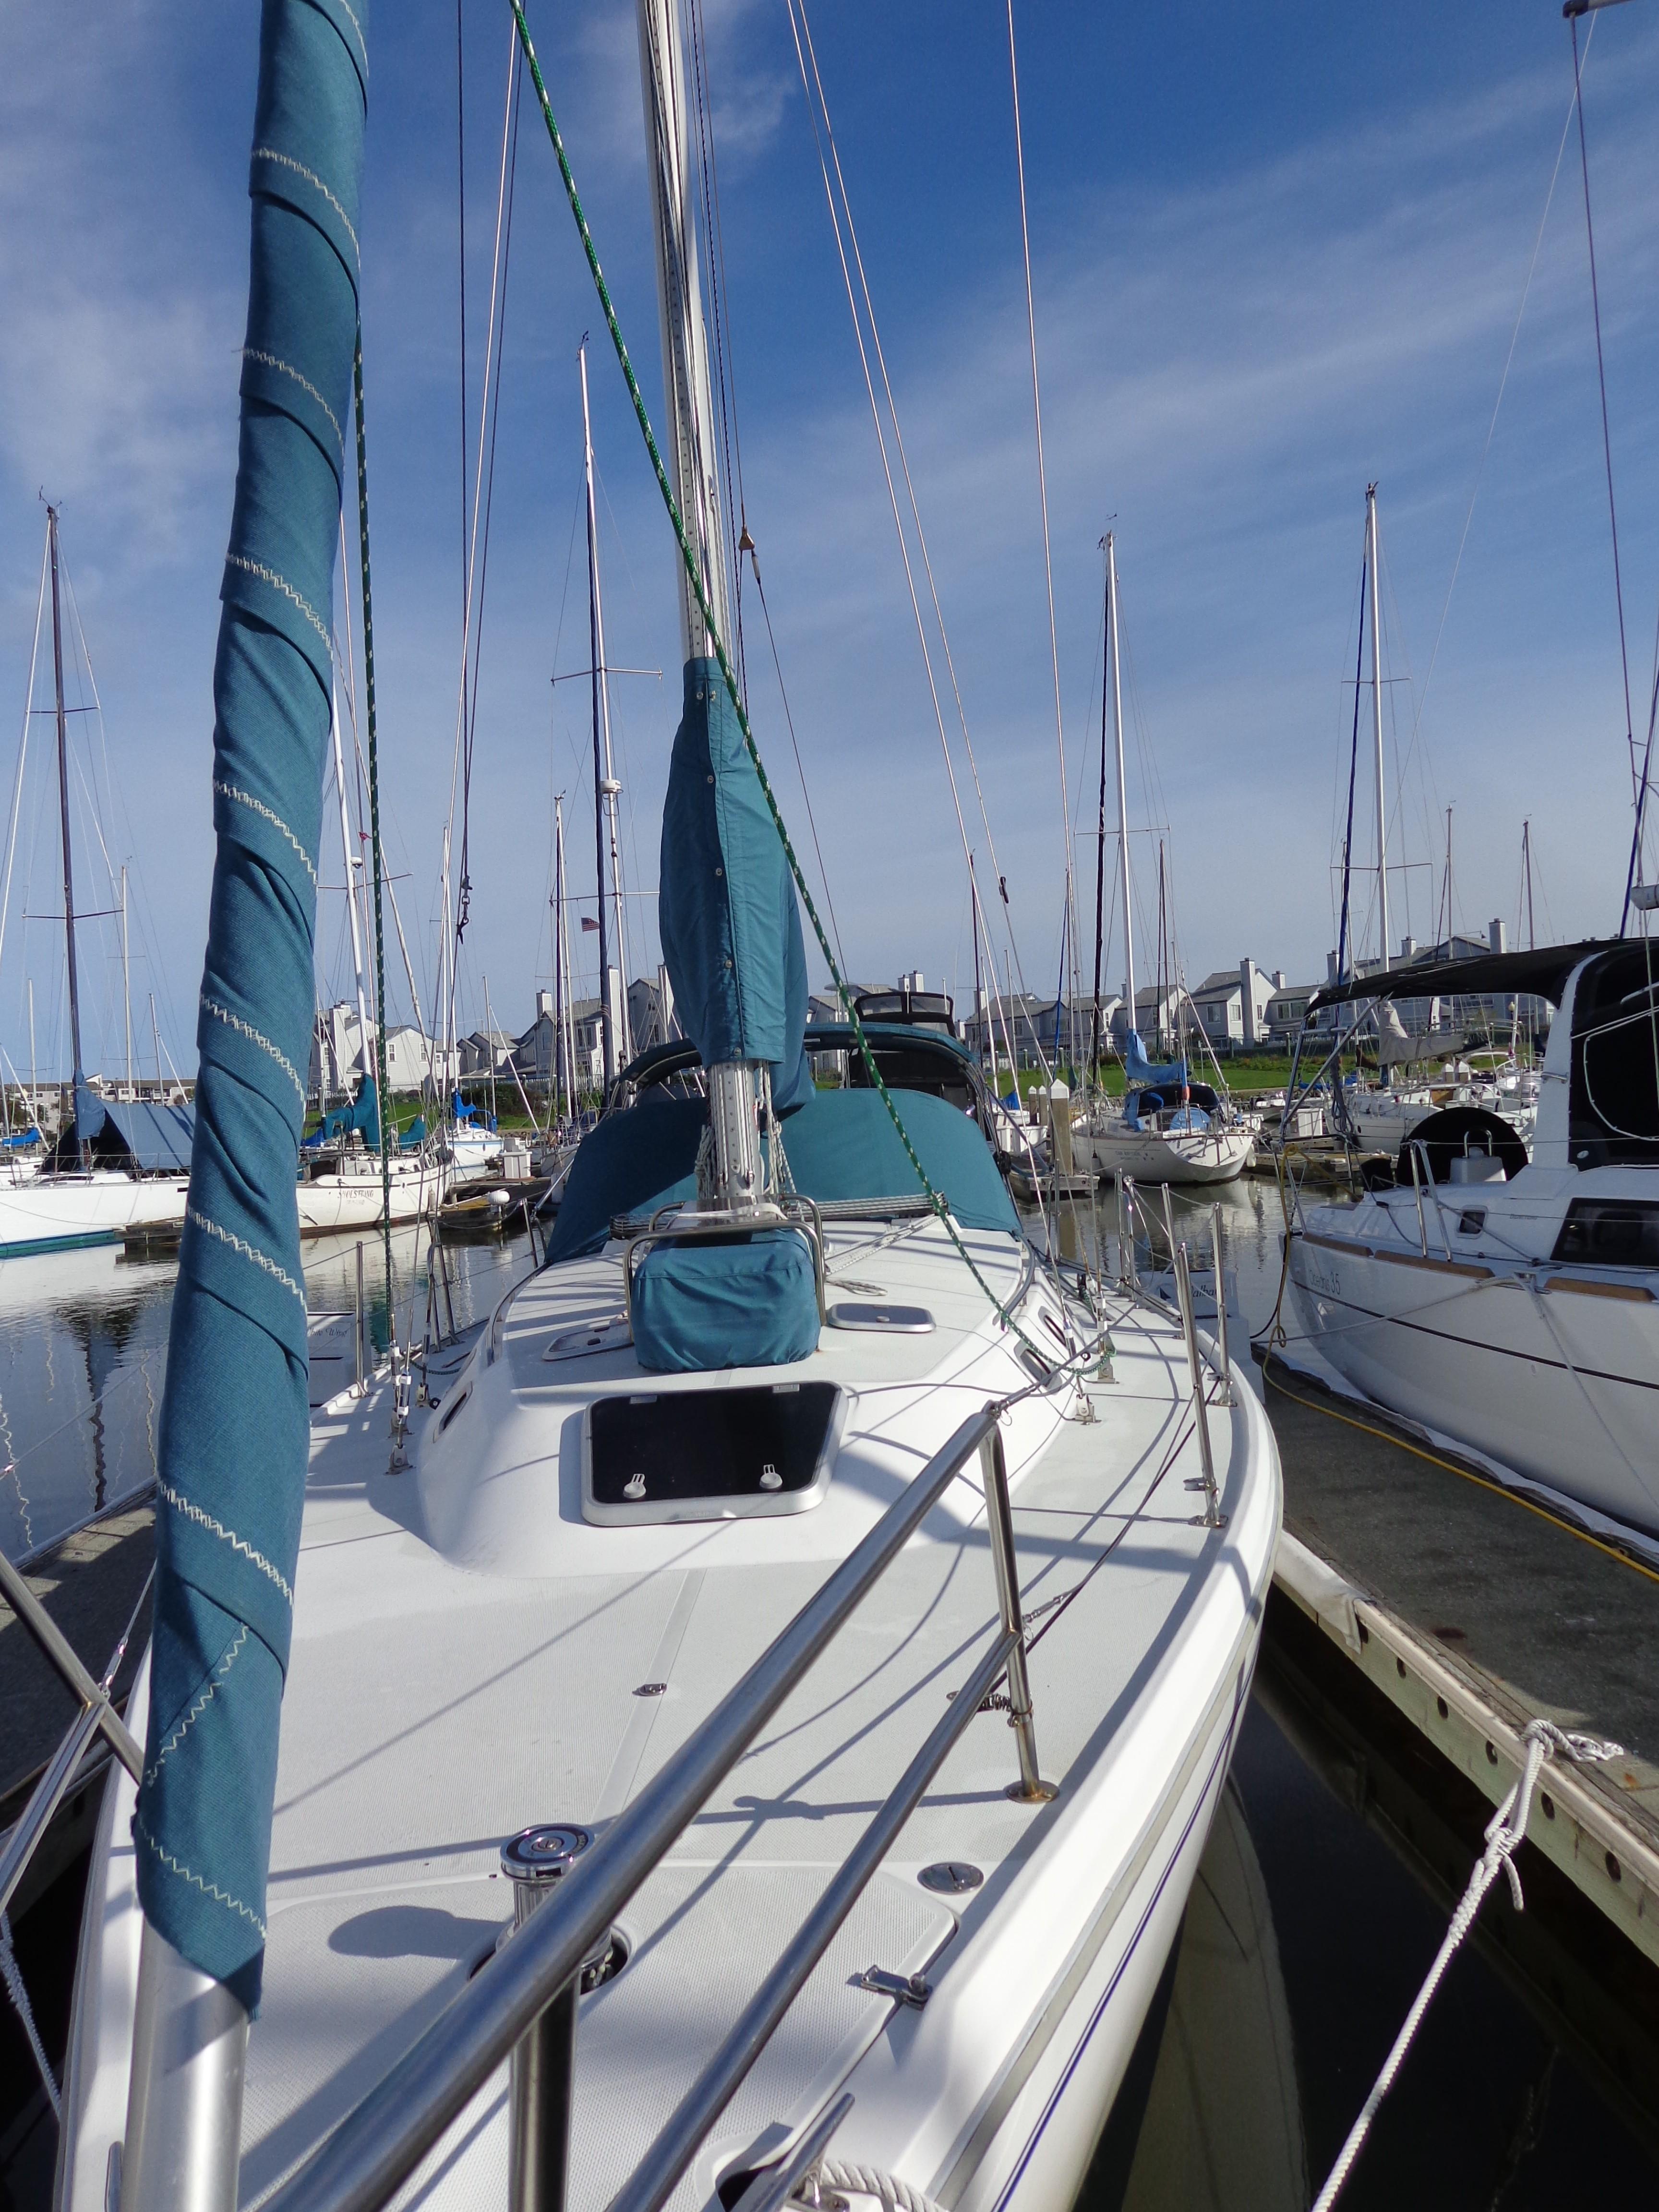 beneteau sailboats for sale california